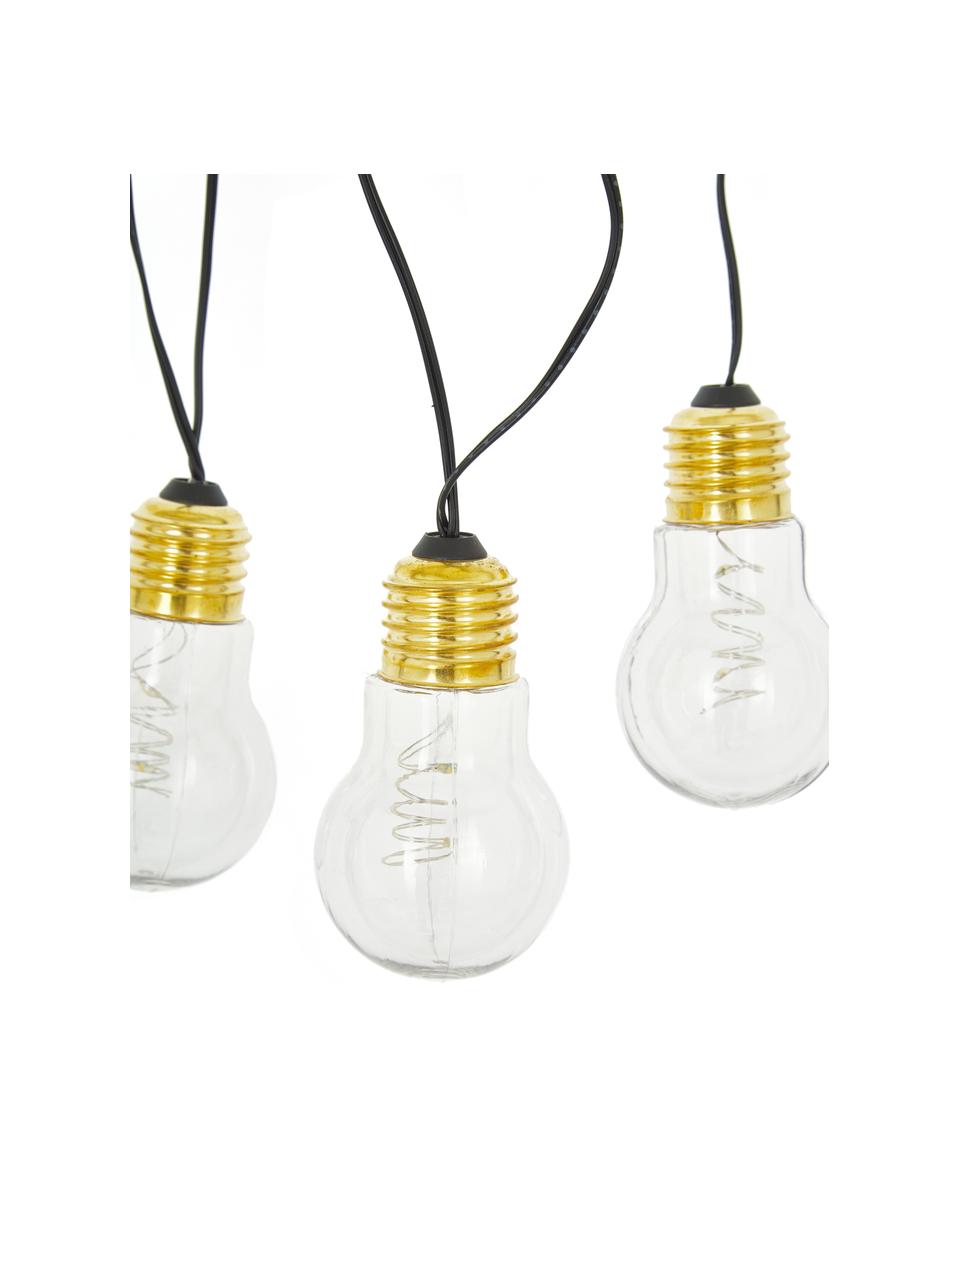 Girlanda świetlna LED Bulb, dł. 100 cm i 5 lampionów, Żarówka: transparentny, złoty Kabel: czarny, D 100 cm